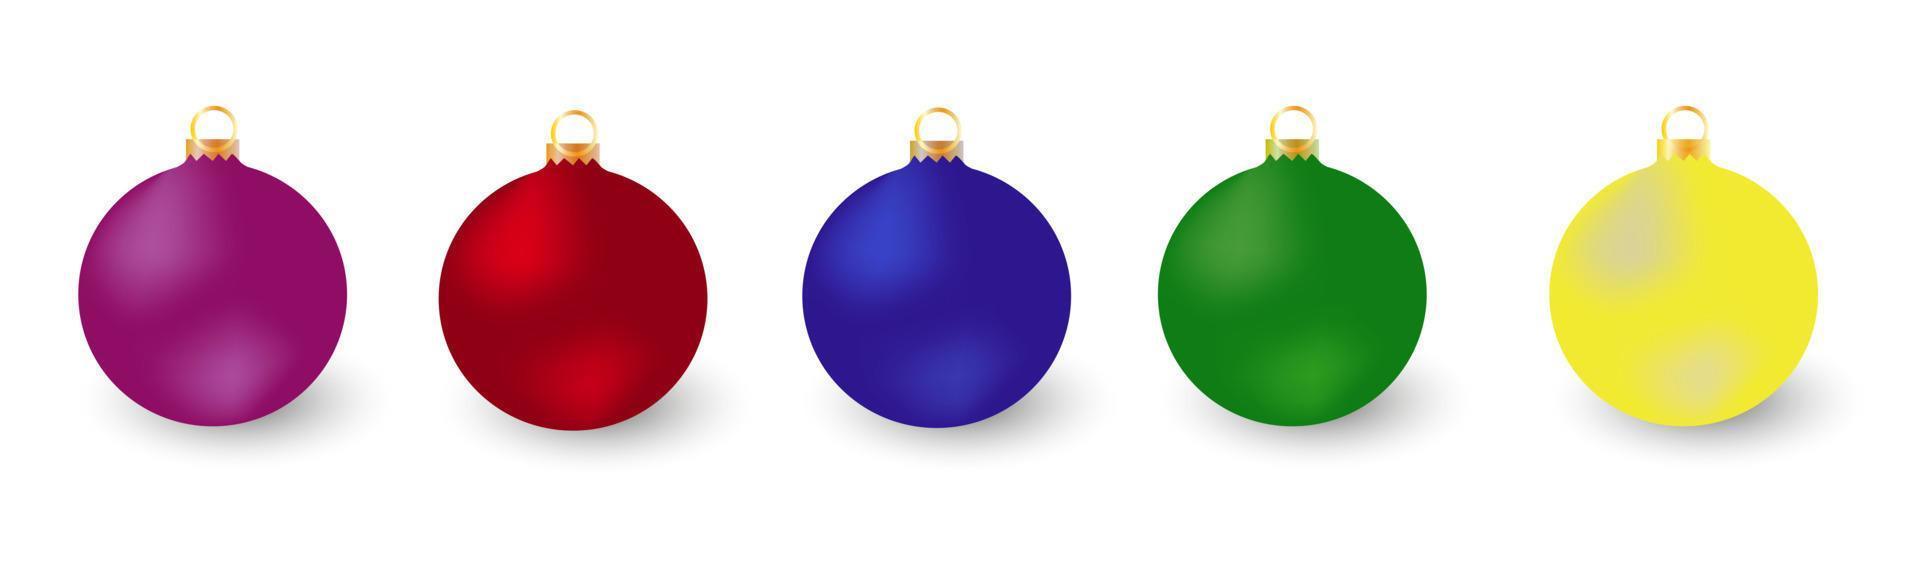 jouet de noël de vacances pour sapin. jeu de boules de Noël sur fond blanc. illustration vectorielle vecteur